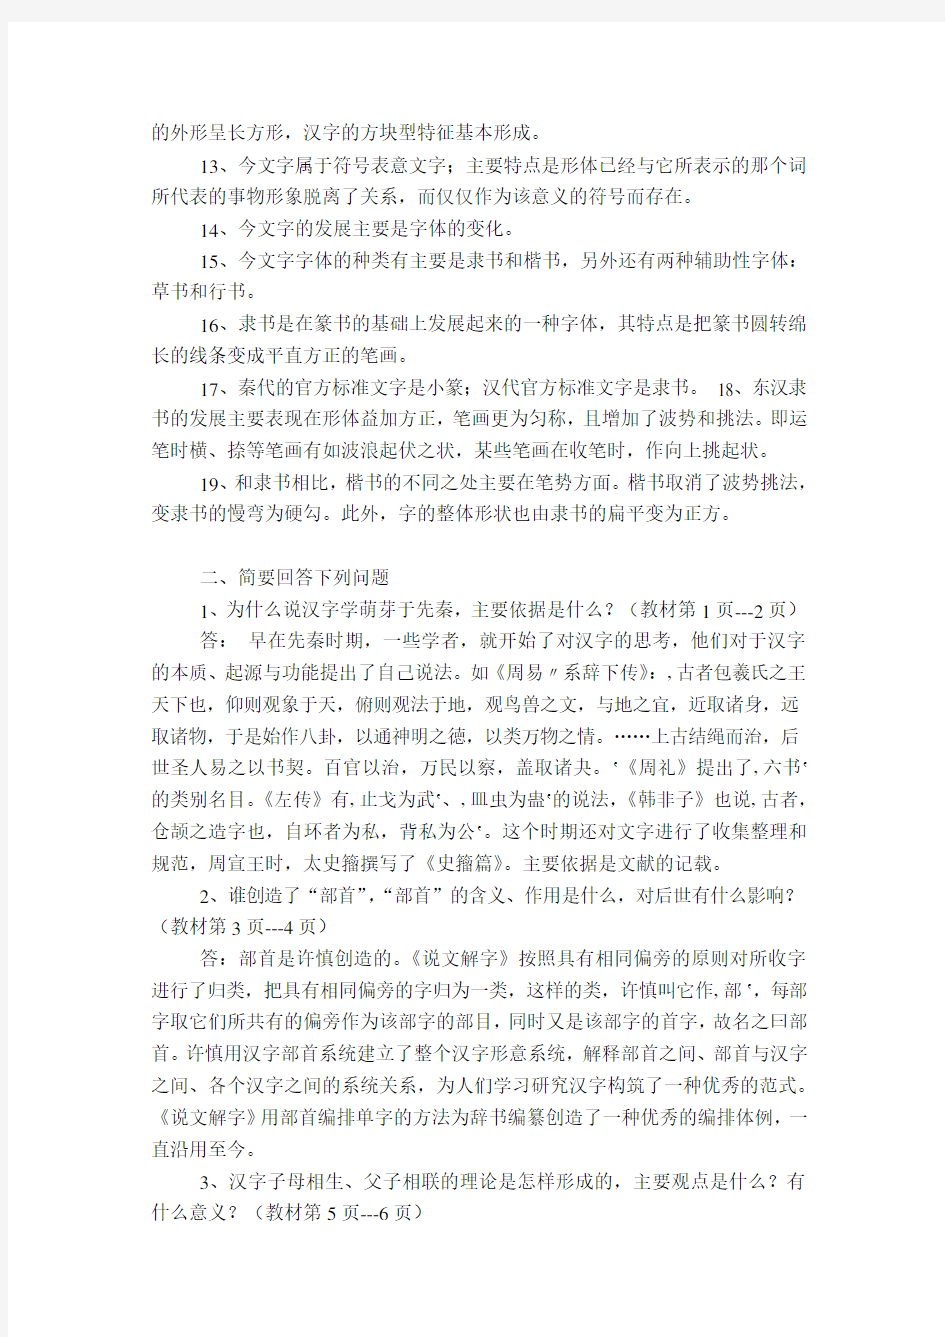 2014电大古代汉语专题形成性考核册答案